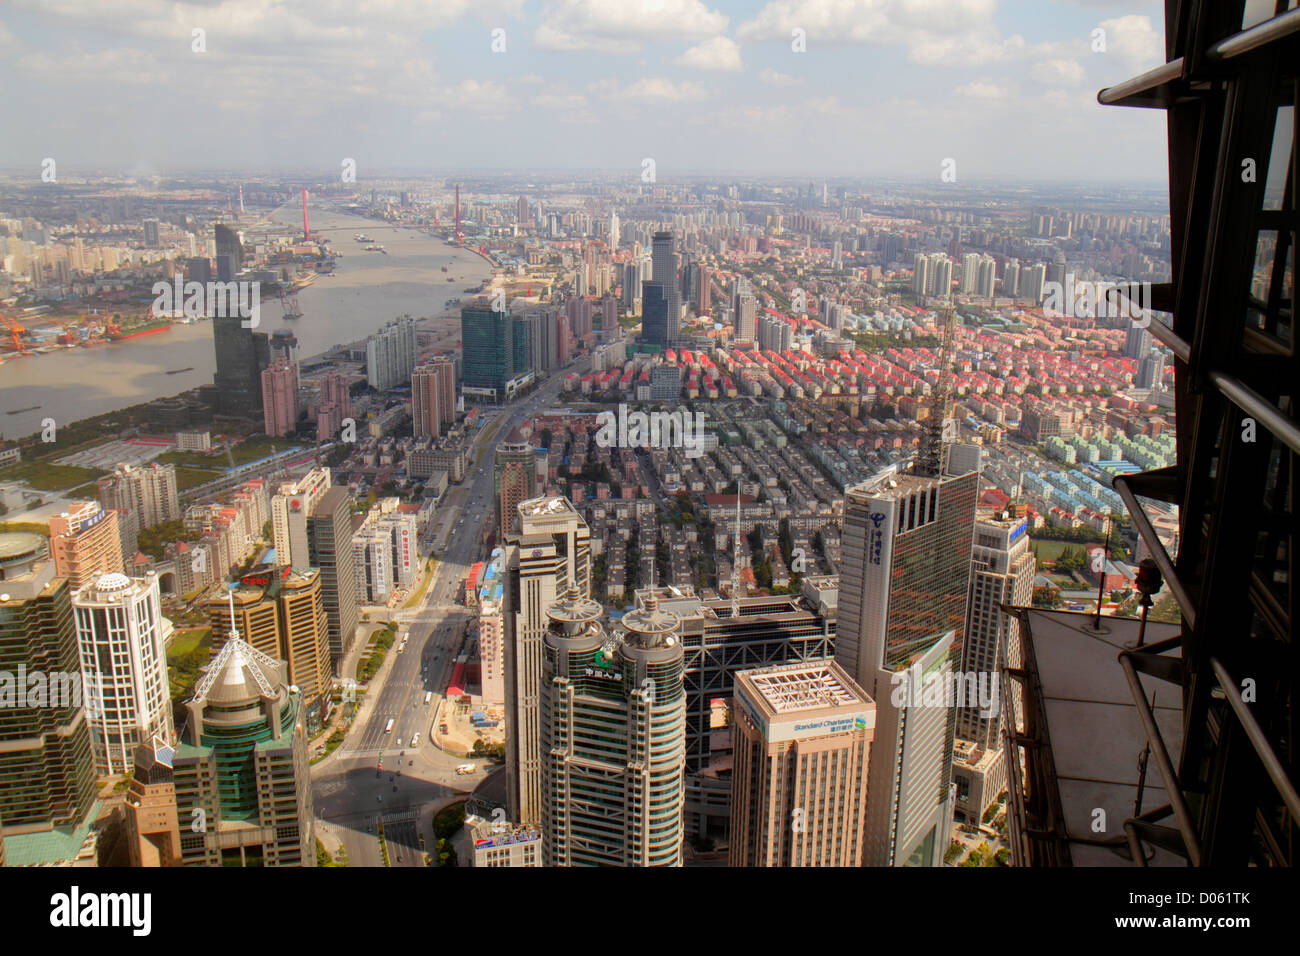 Shanghai China, chinesisches Finanzviertel Pudong Lujiazui, Huangpu River, Century Avenue, Blick vom Jin Mao Tower, Grand Hyatt Shanghai, Hotel, China Insura Stockfoto